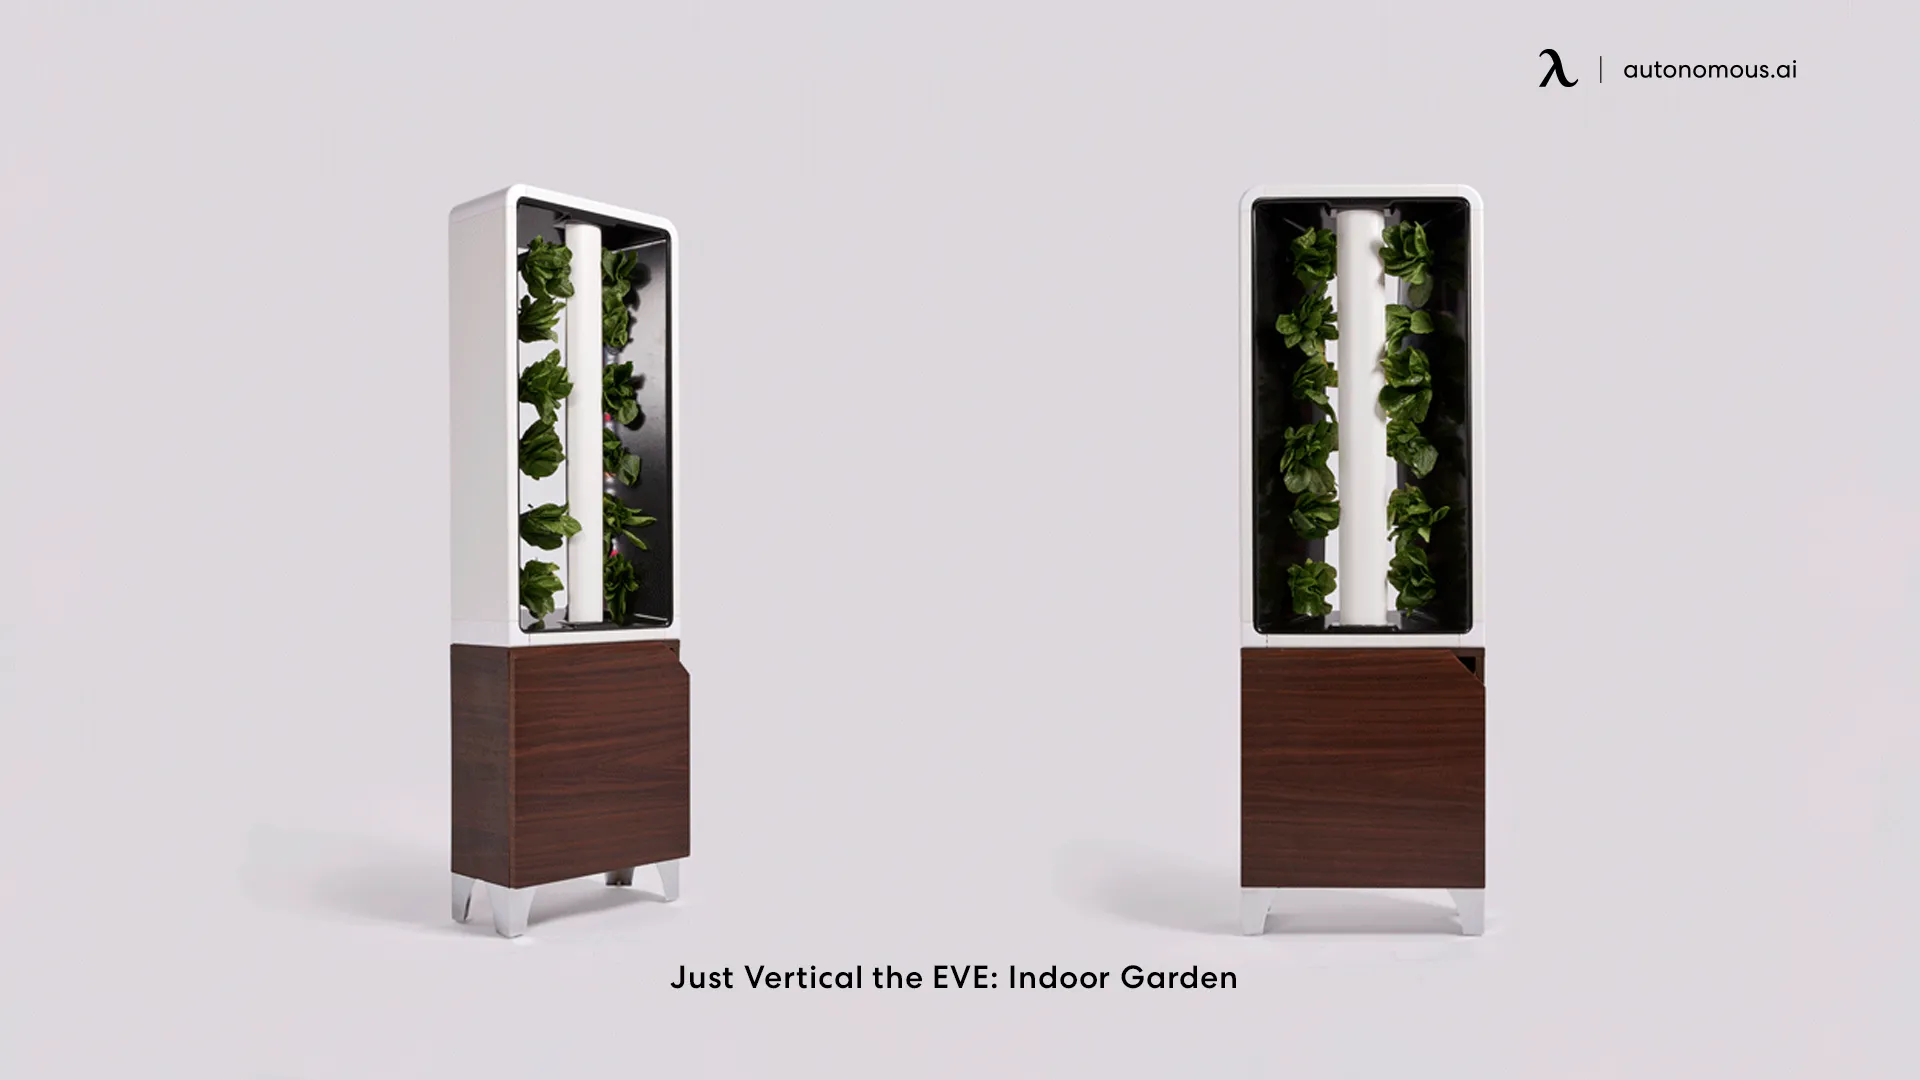 Just Vertical the EVE: Indoor Garden